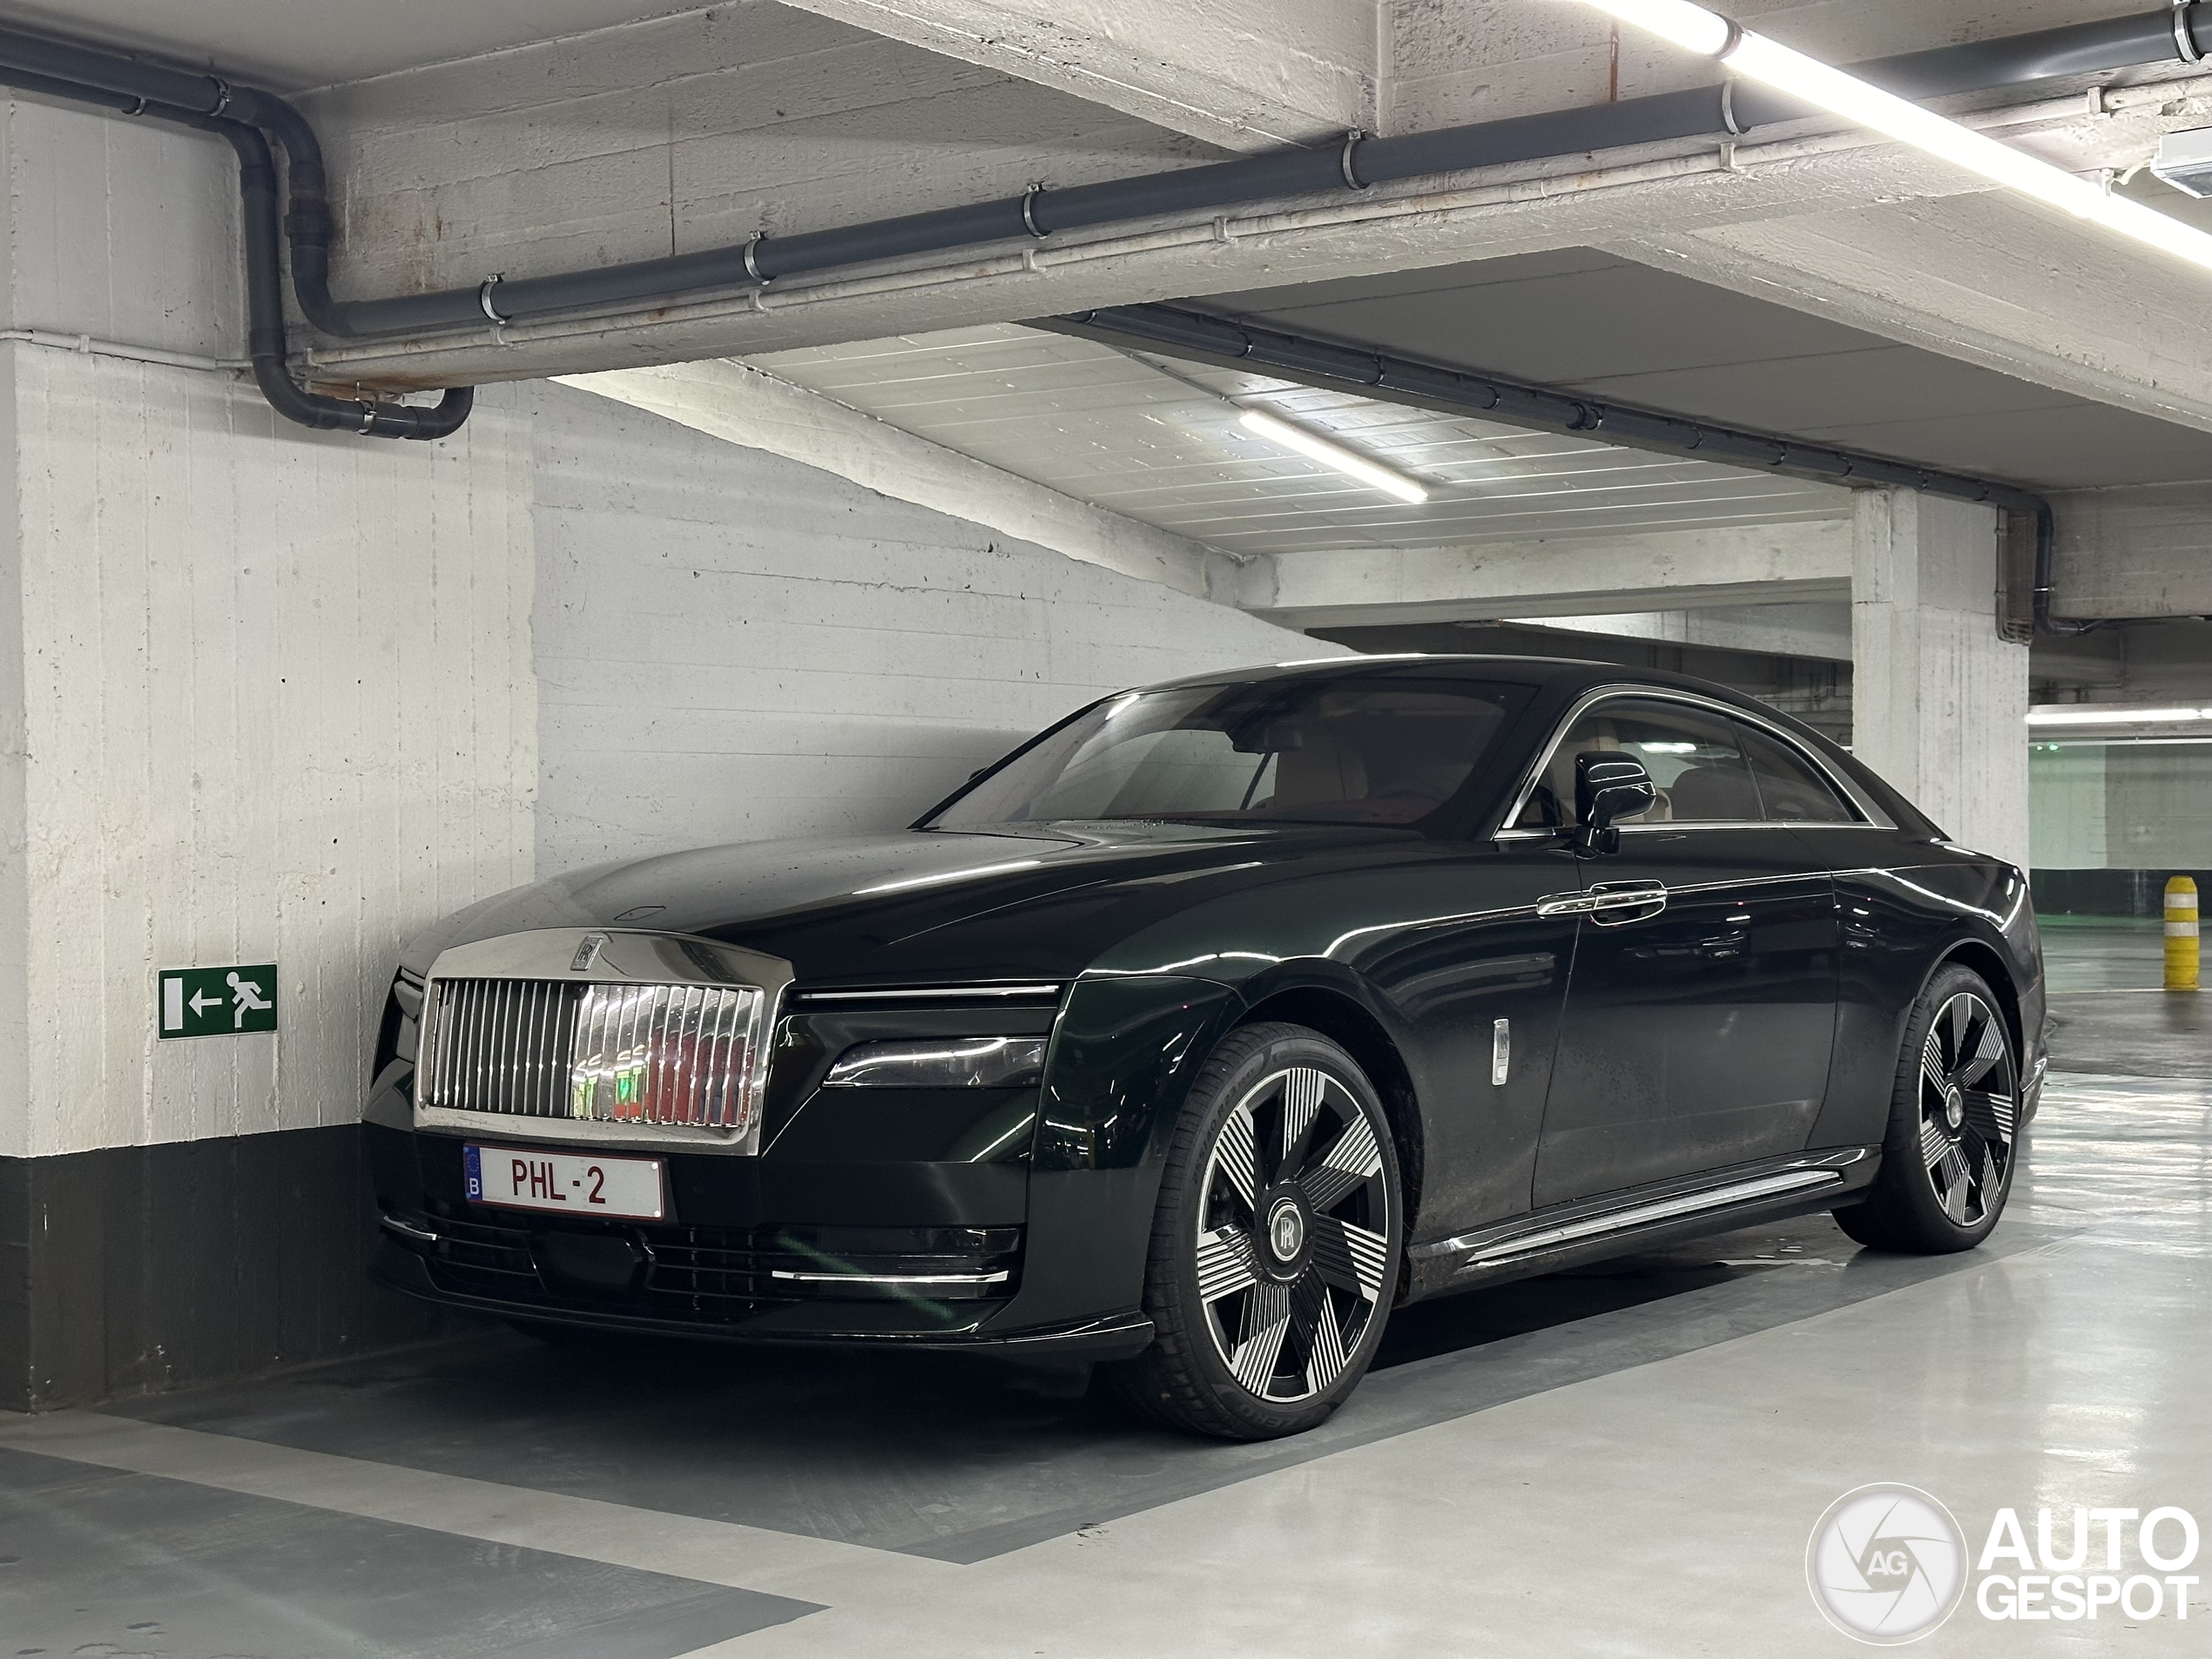 We kijken hier naar de eerste Rolls-Royce Spectre van België